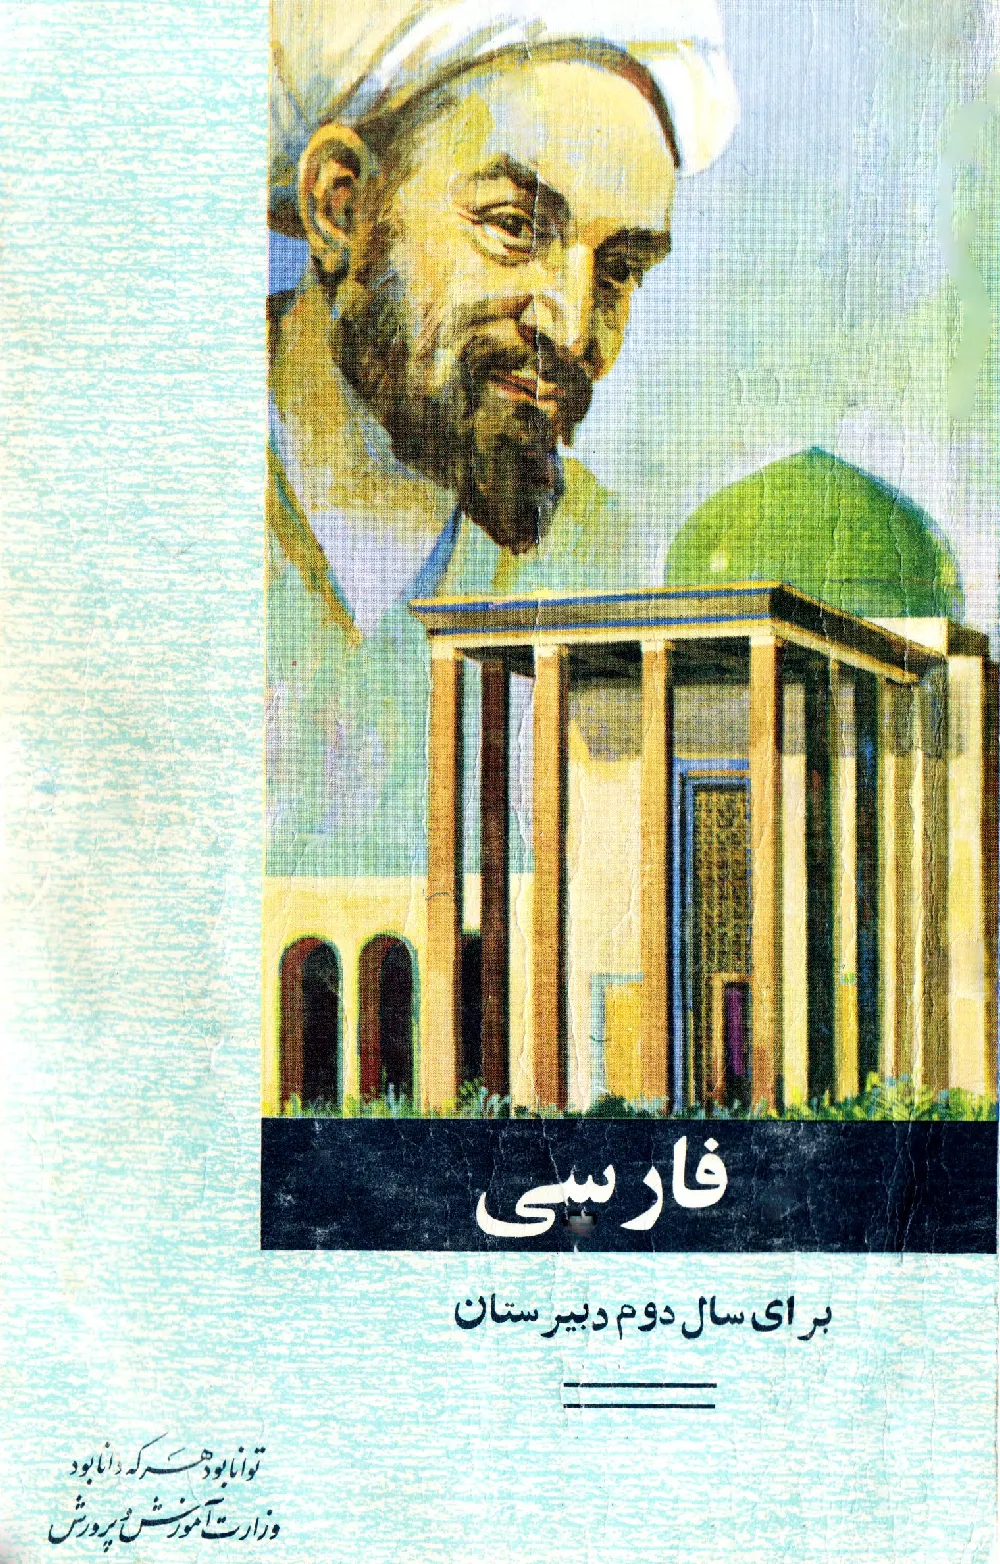 فارسی برای سال دوم دبیرستان - سال 1348